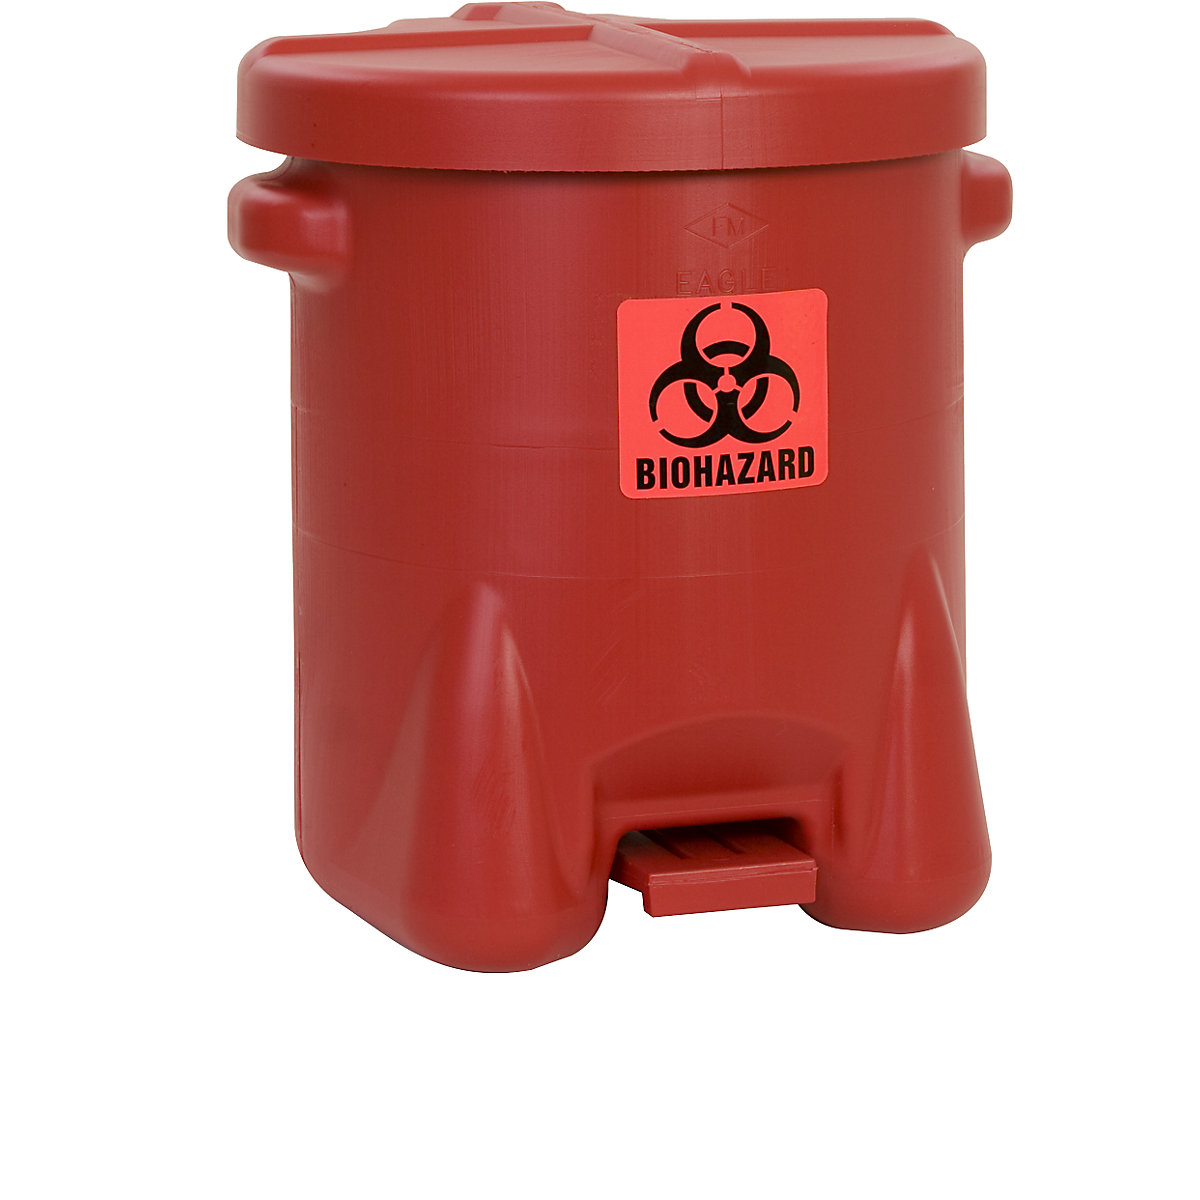 Bezpečnostná nádoba z PE plechu na likvidáciu biologických odpadov – Justrite